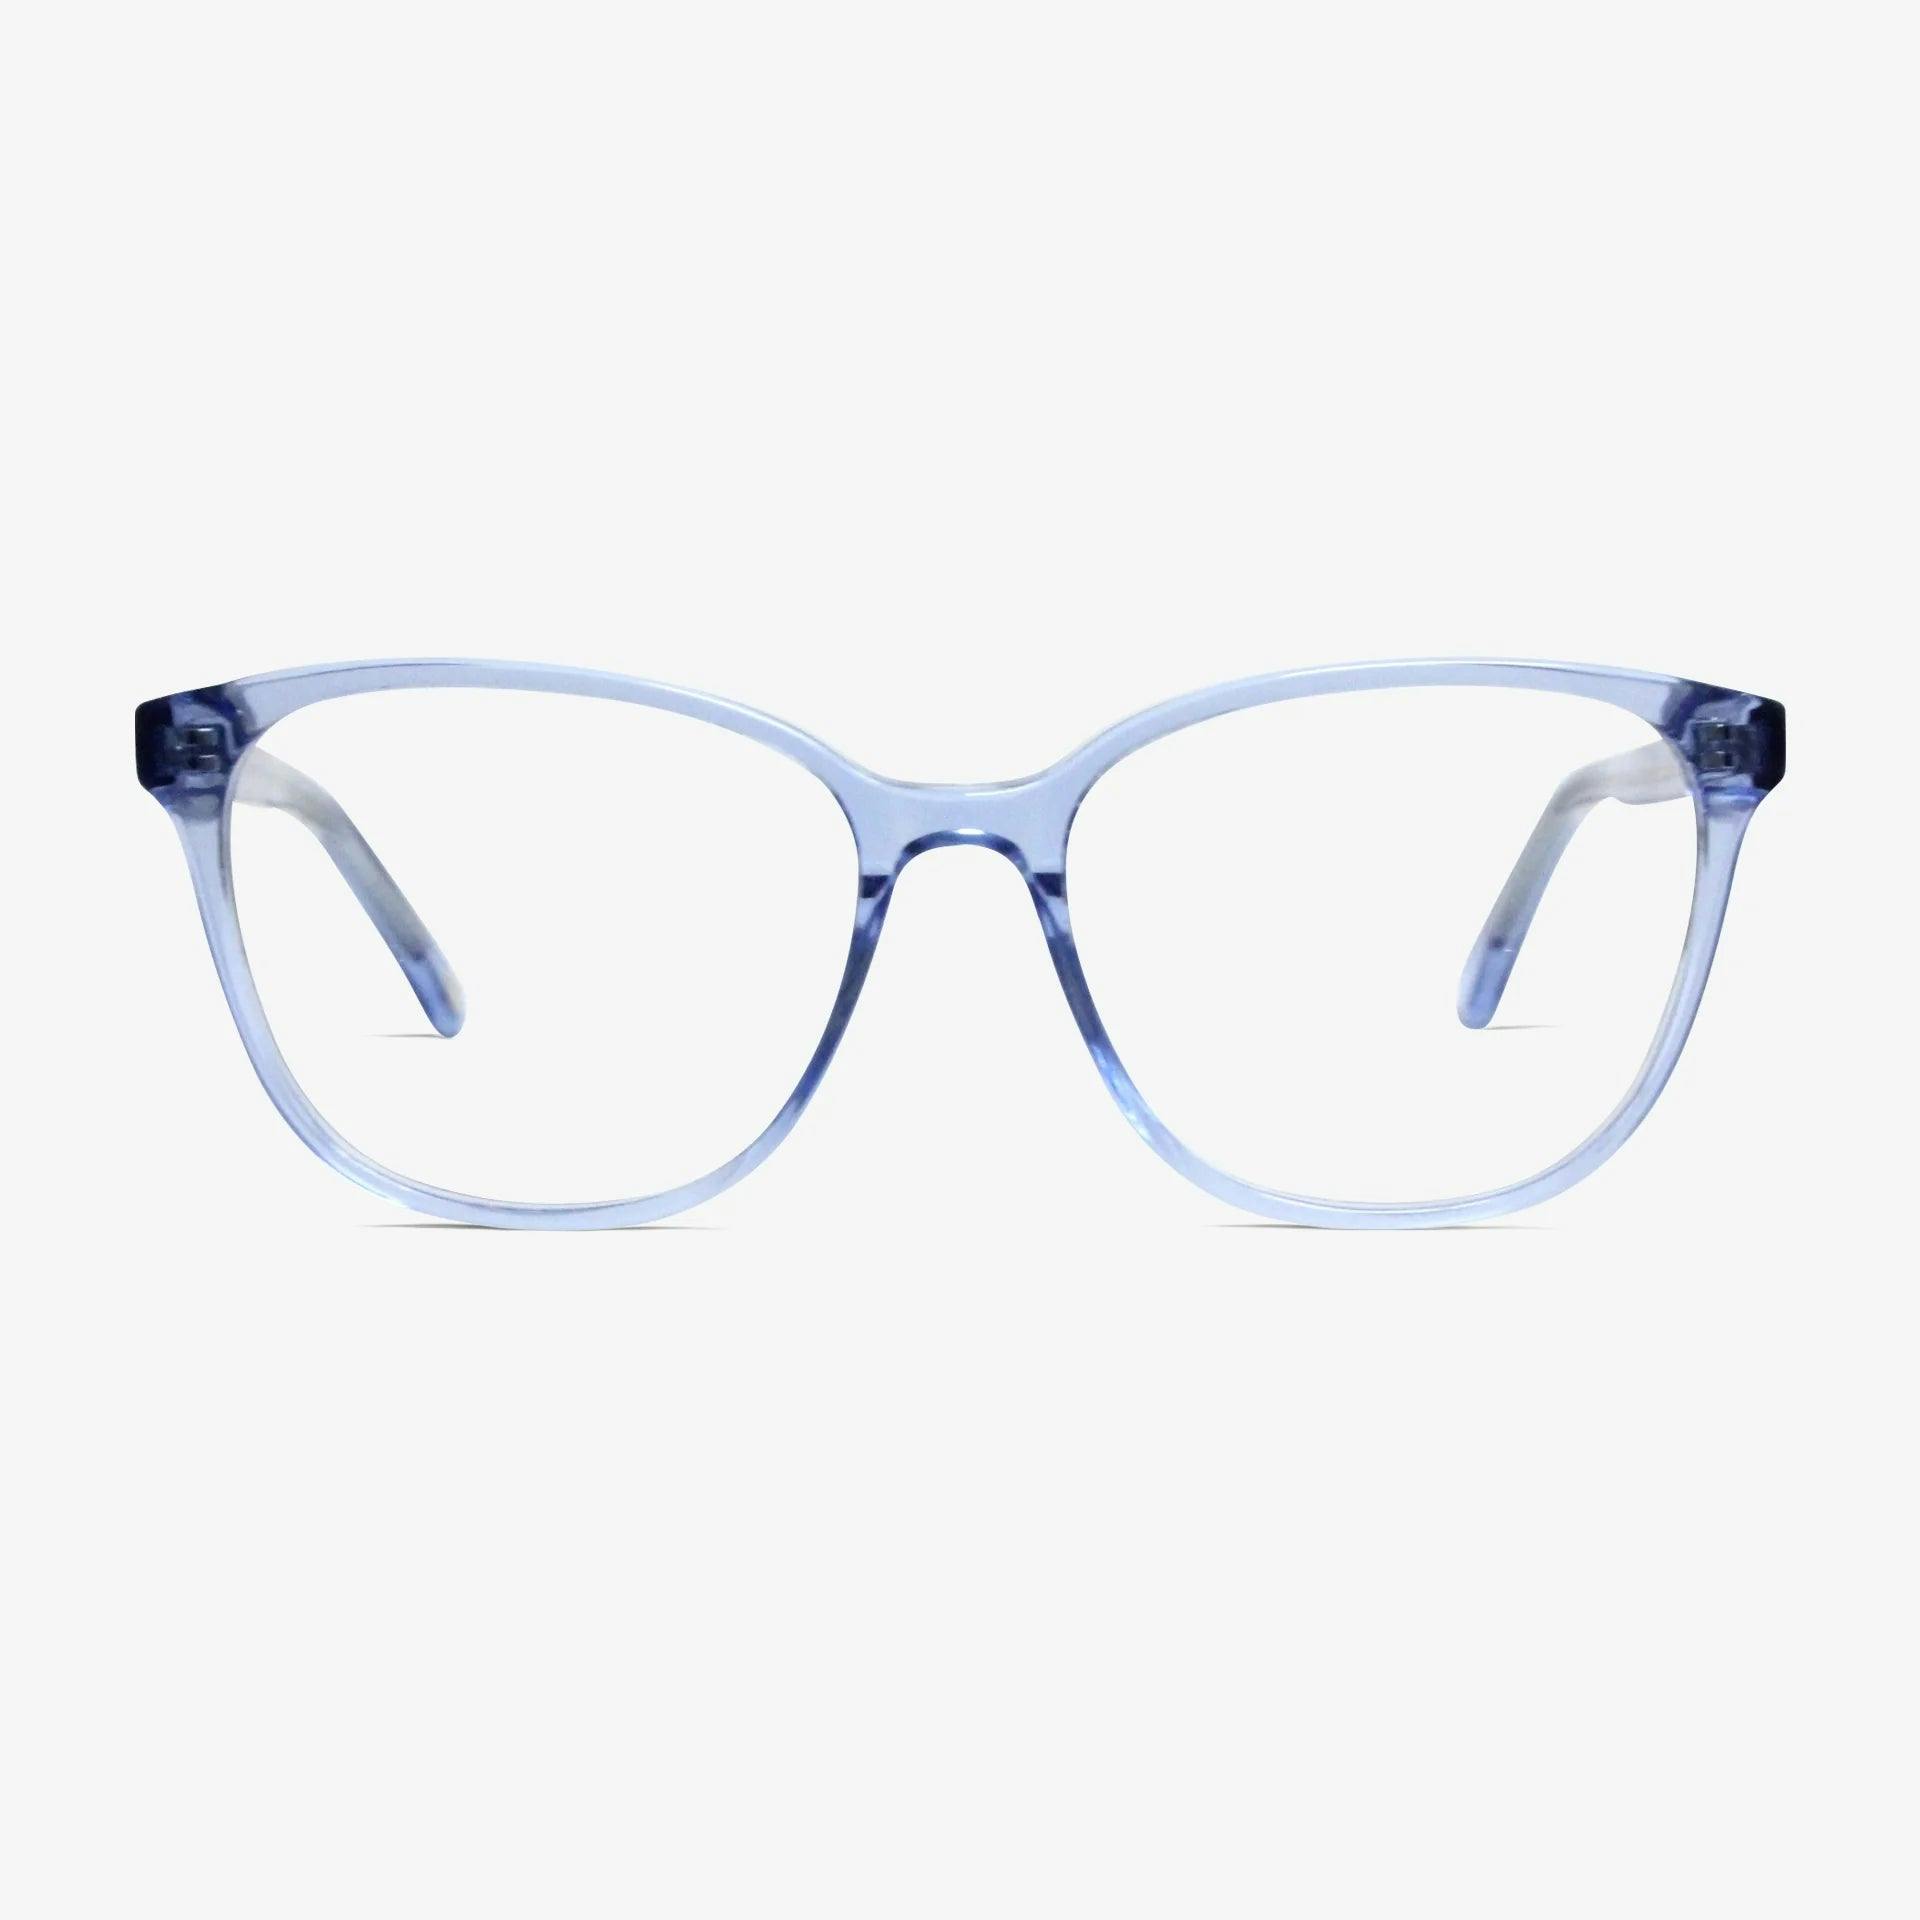 Huxley glasses | Paige Sky Blue 